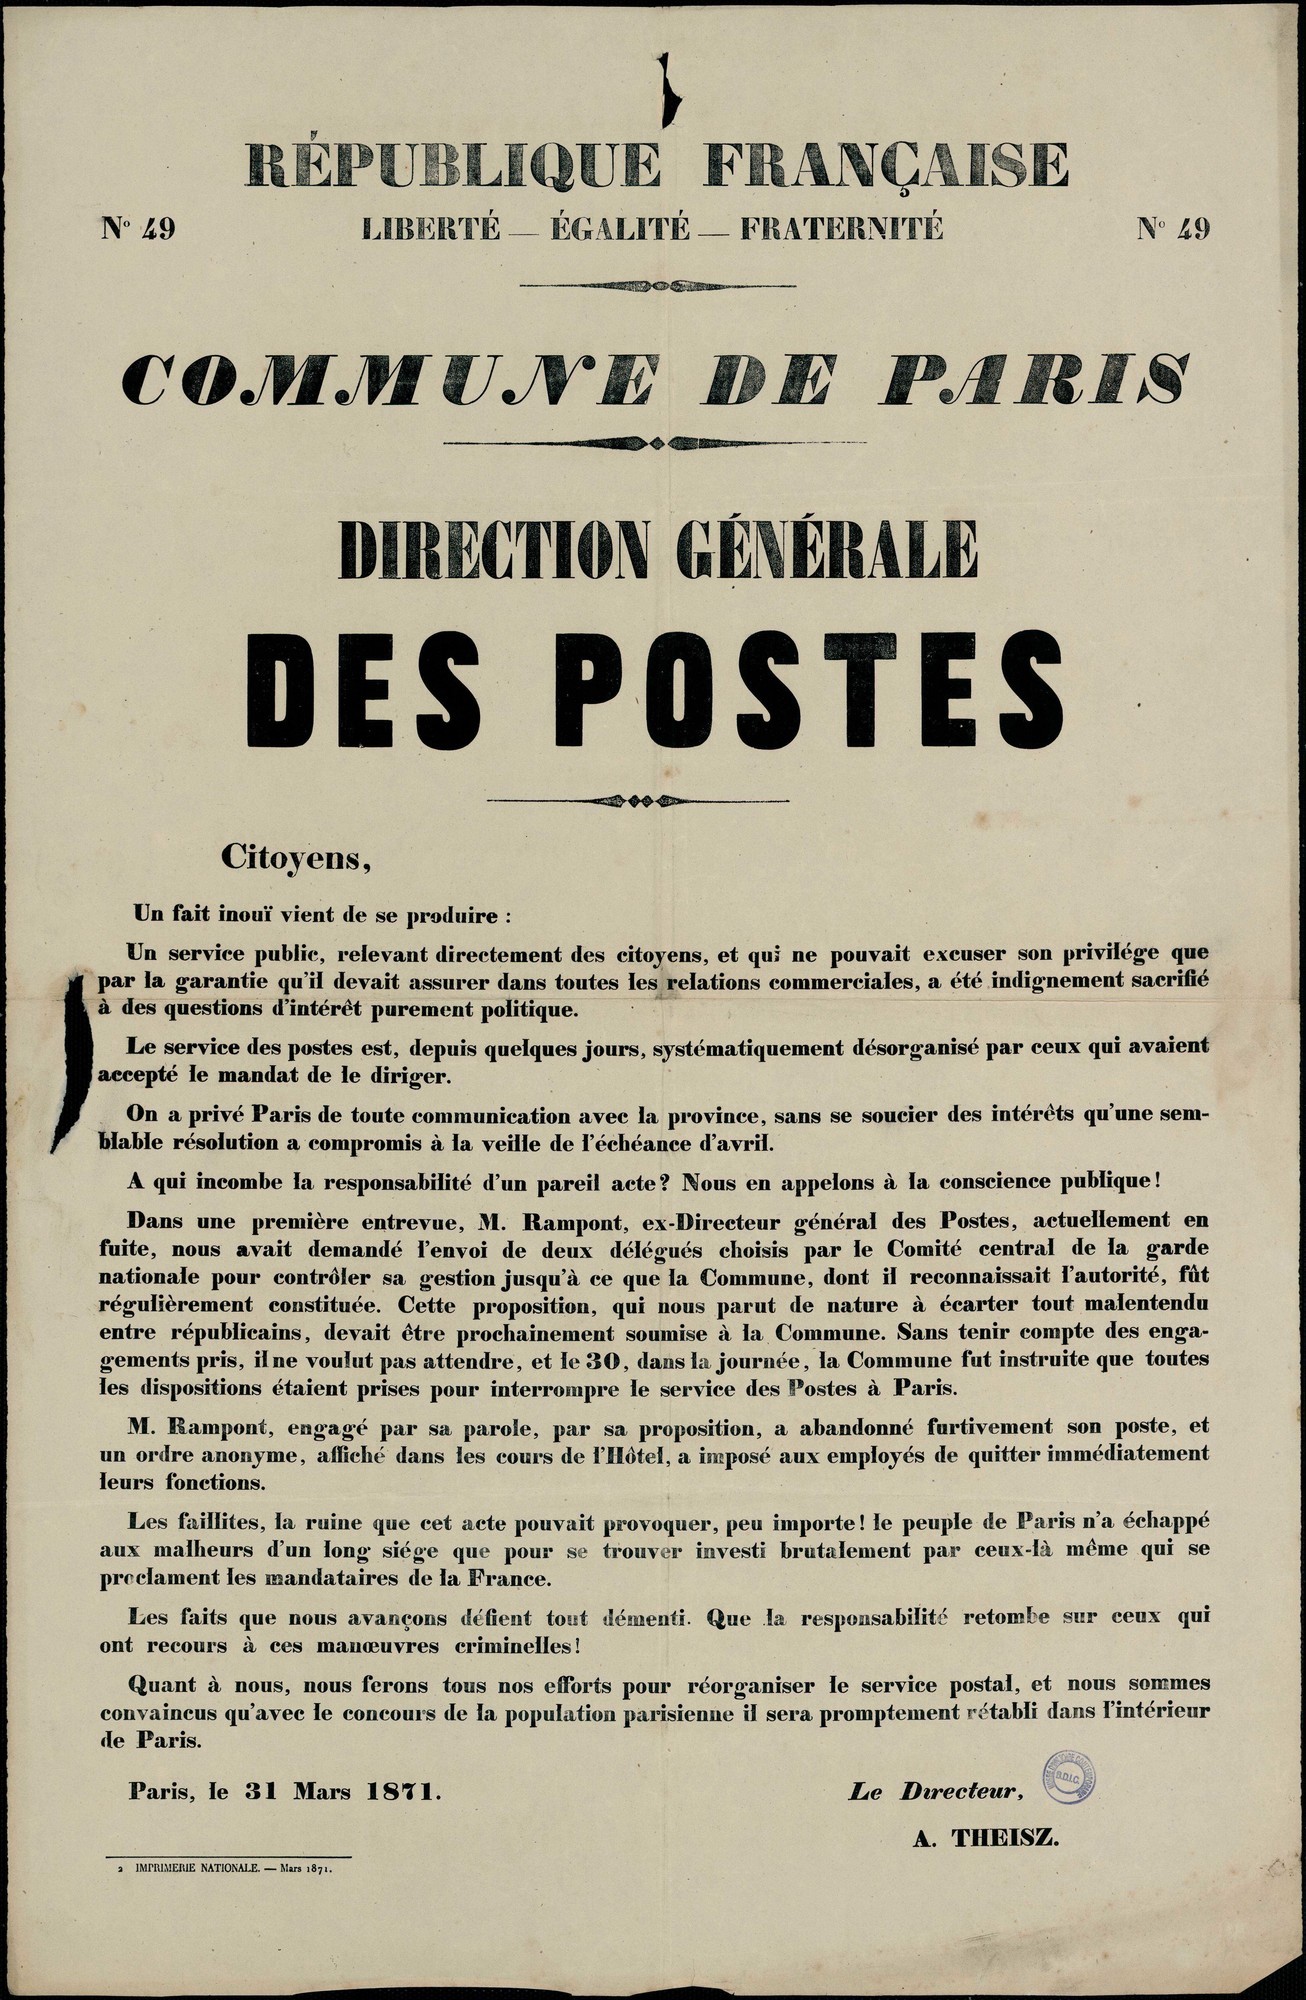 Affiche de la Commune de Paris N° 49 du 31 mars 1871 - Annonce de Theisz du départ préccipité de Rampont (source : La Contemporaine – Nanterre / argonnaute.parisnanterre.fr)